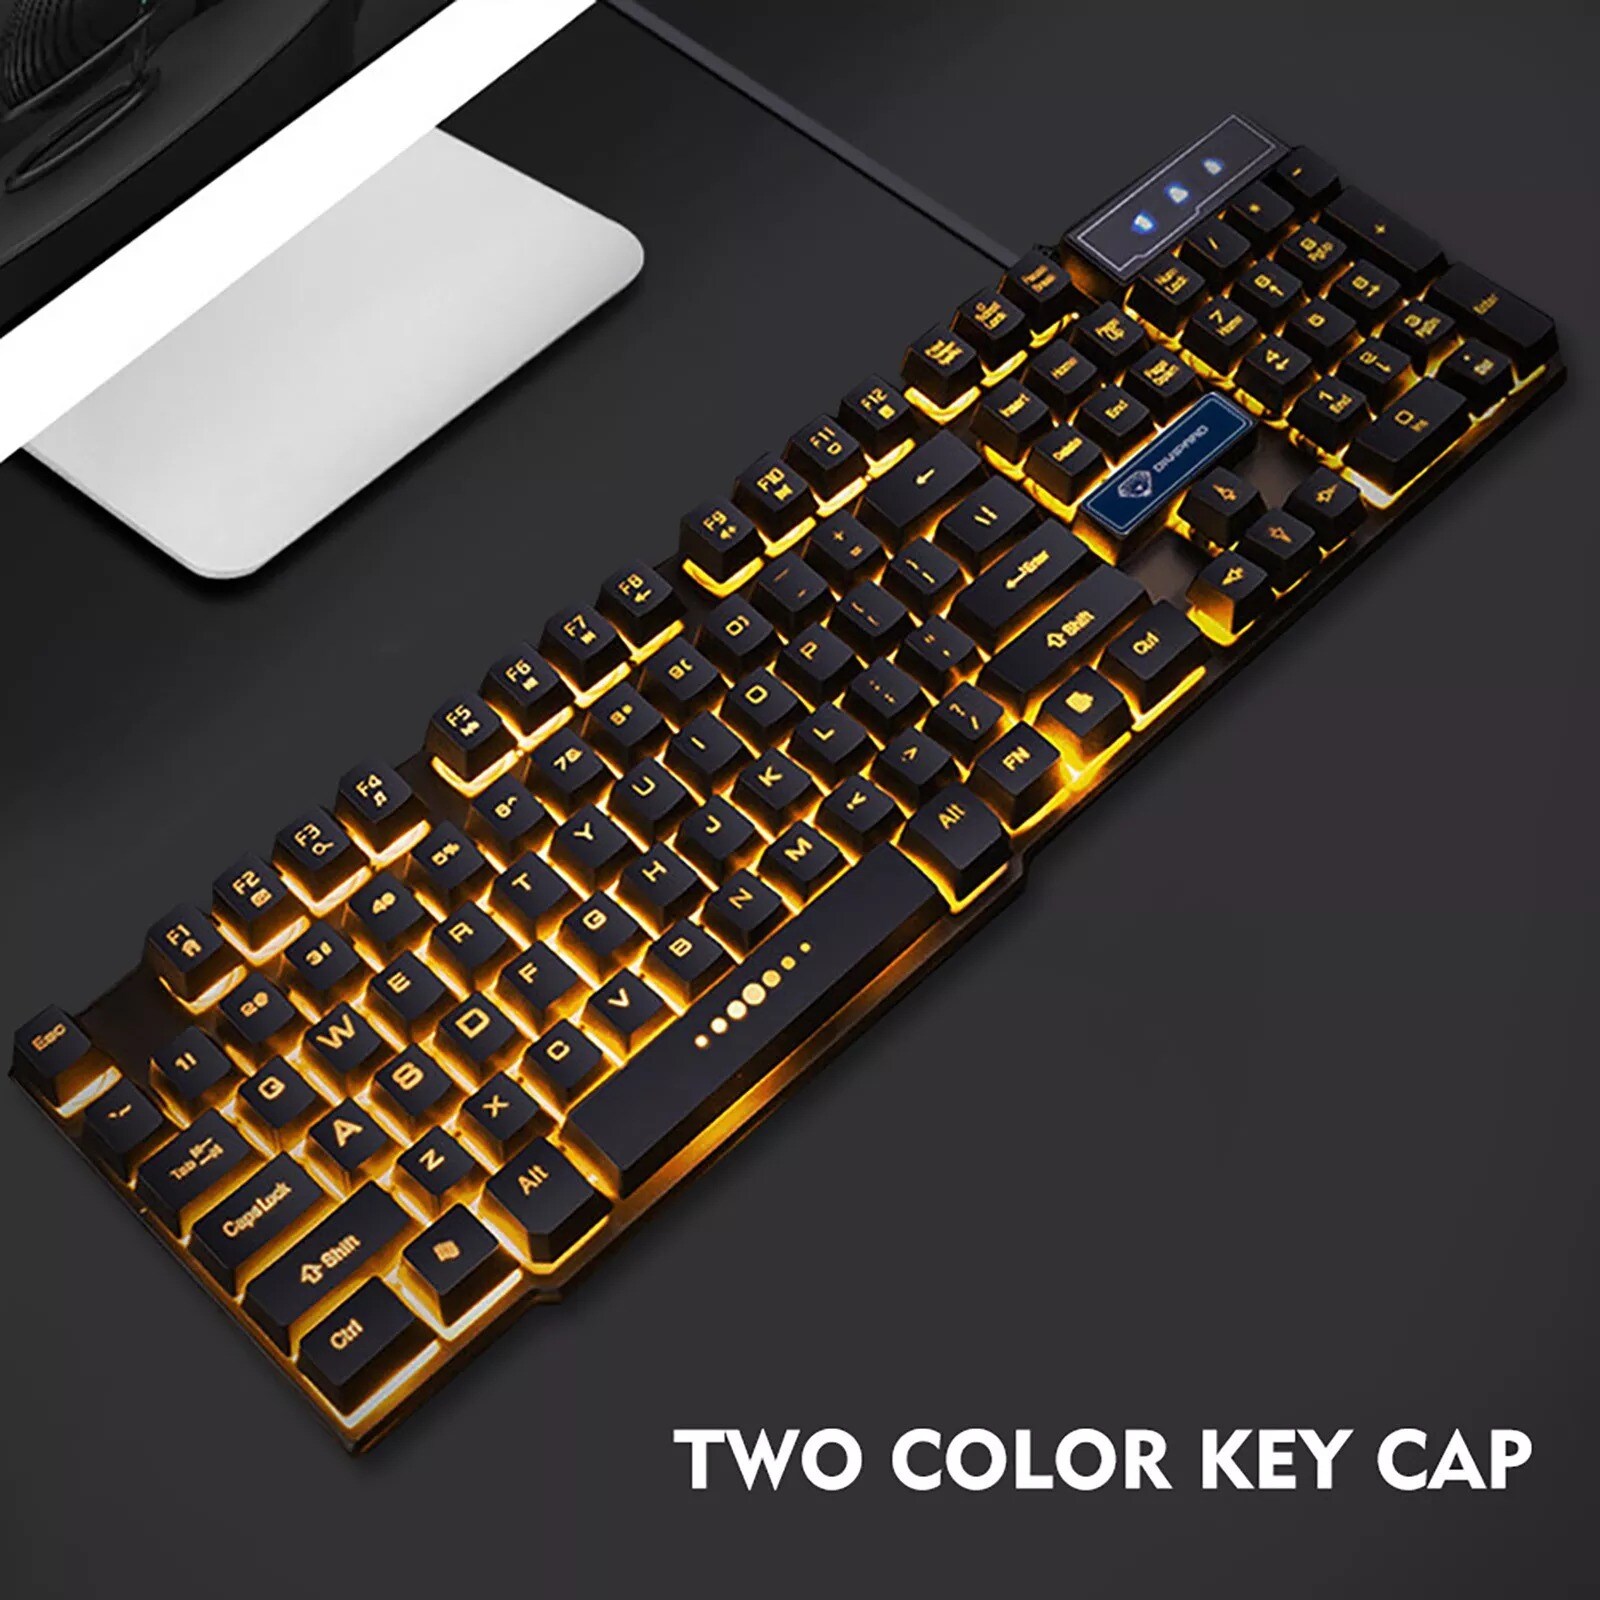 Wired USB Gaming Keyboard Floating Cap Waterproof Rainbow Black - 2